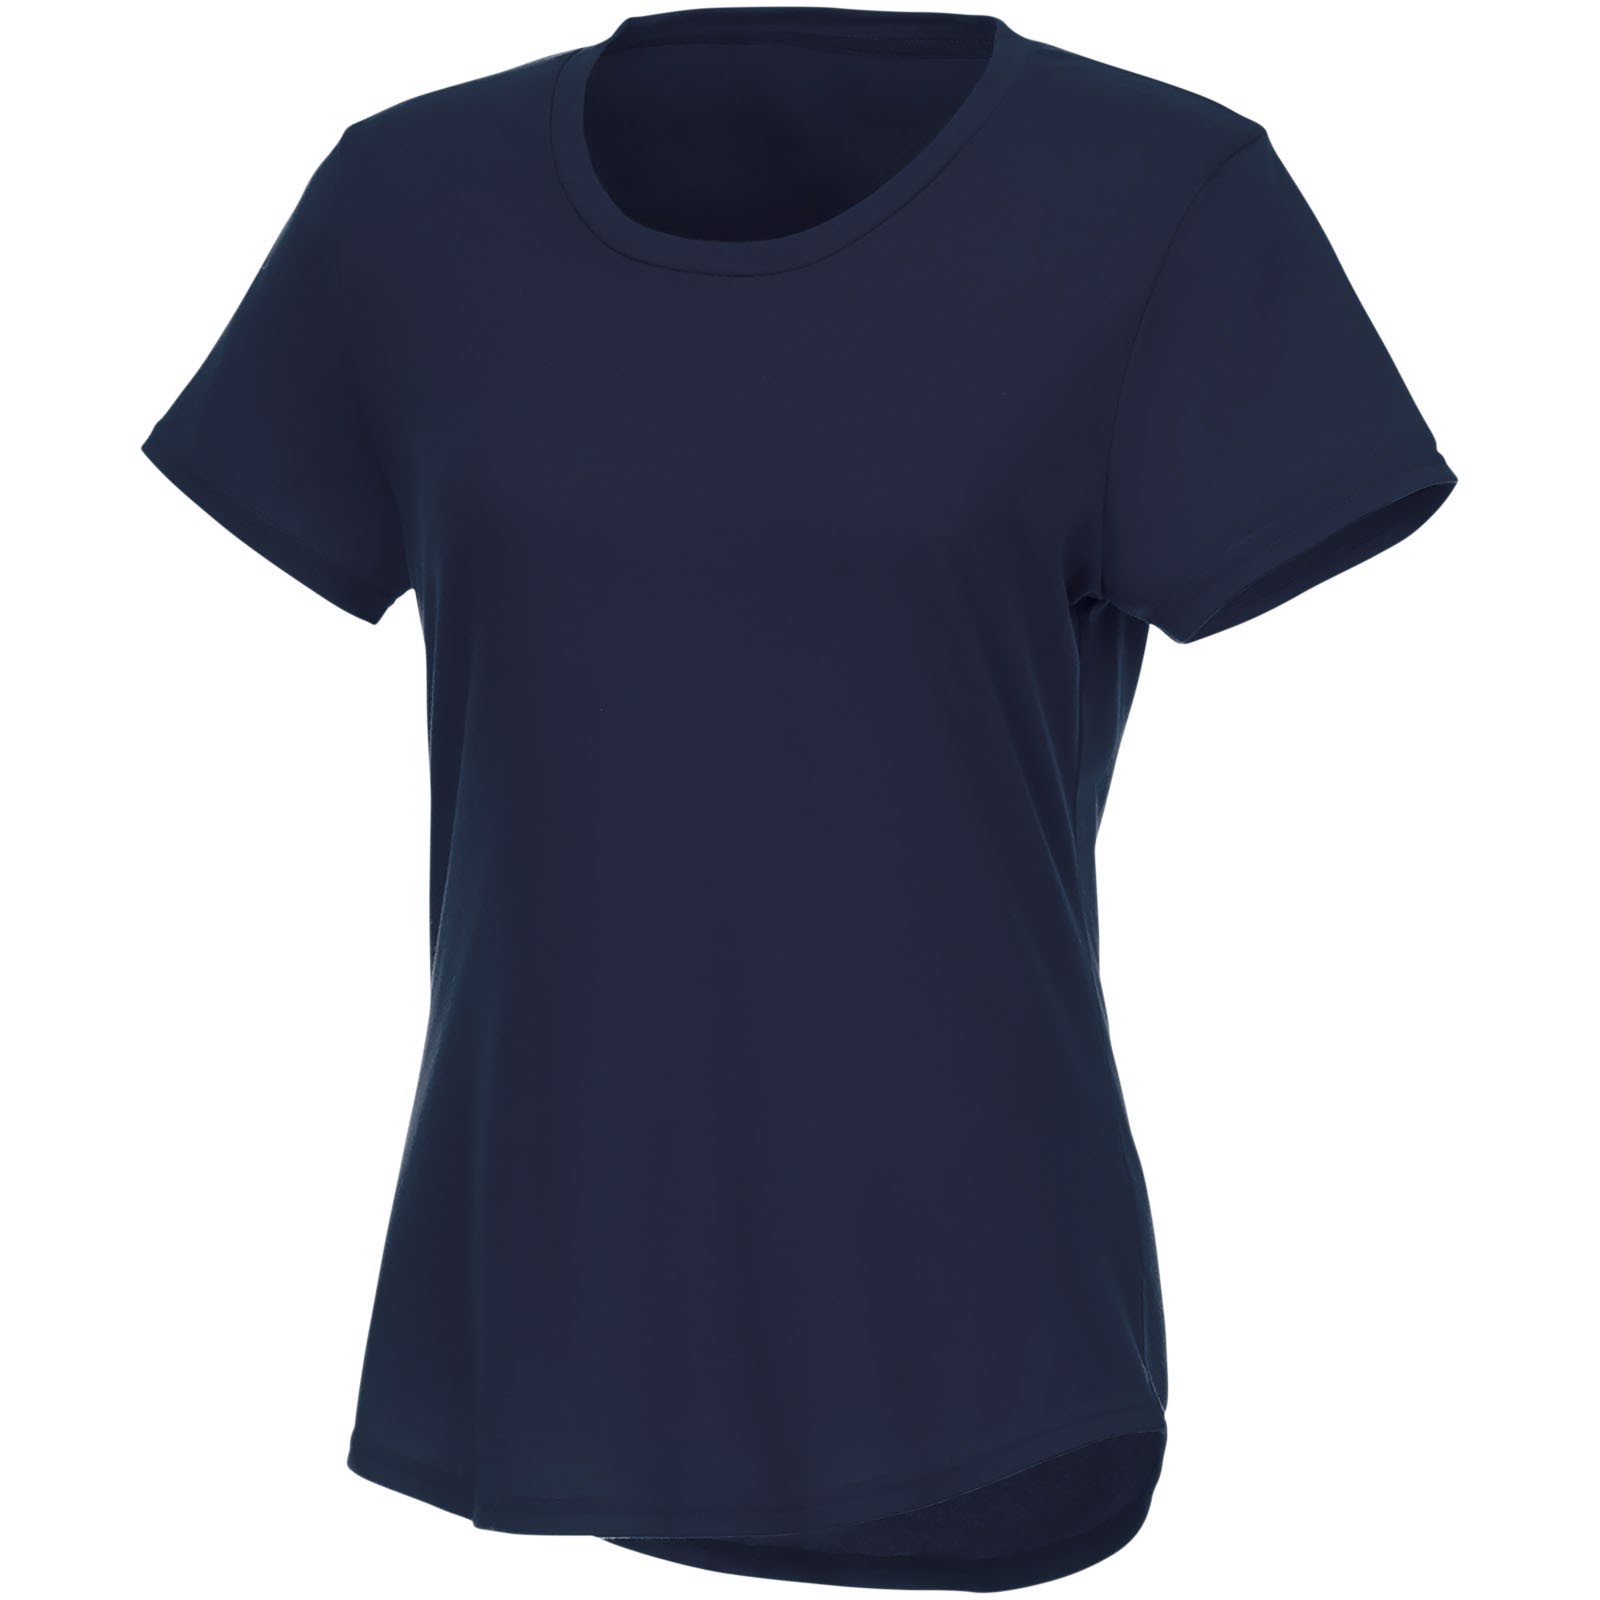 Camiseta de manga corta de material reciclado GRS para mujer "Jade" - Azul marino / M